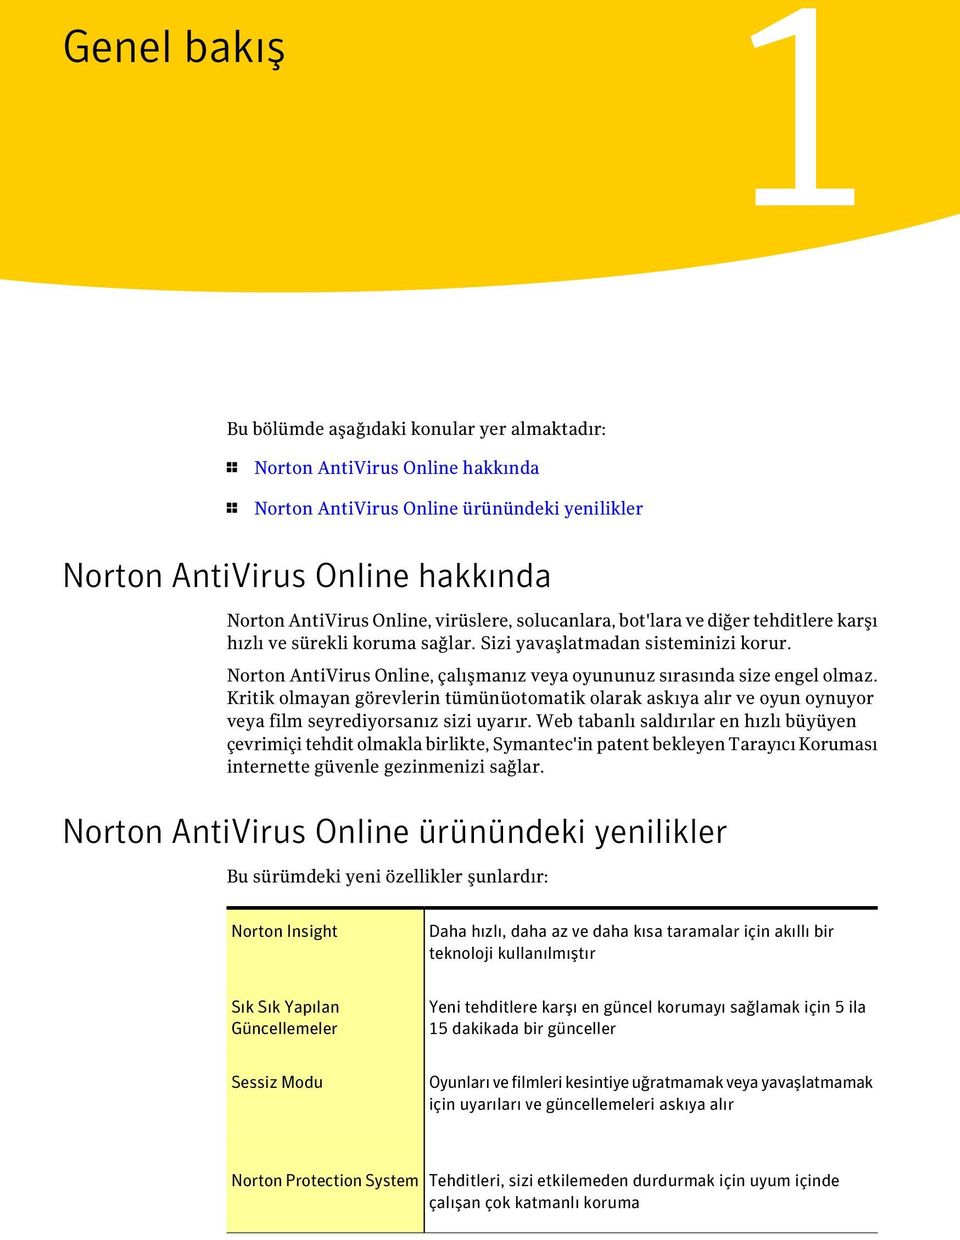 Norton AntiVirus Online, çalışmanız veya oyununuz sırasında size engel olmaz. Kritik olmayan görevlerin tümünüotomatik olarak askıya alır ve oyun oynuyor veya film seyrediyorsanız sizi uyarır.